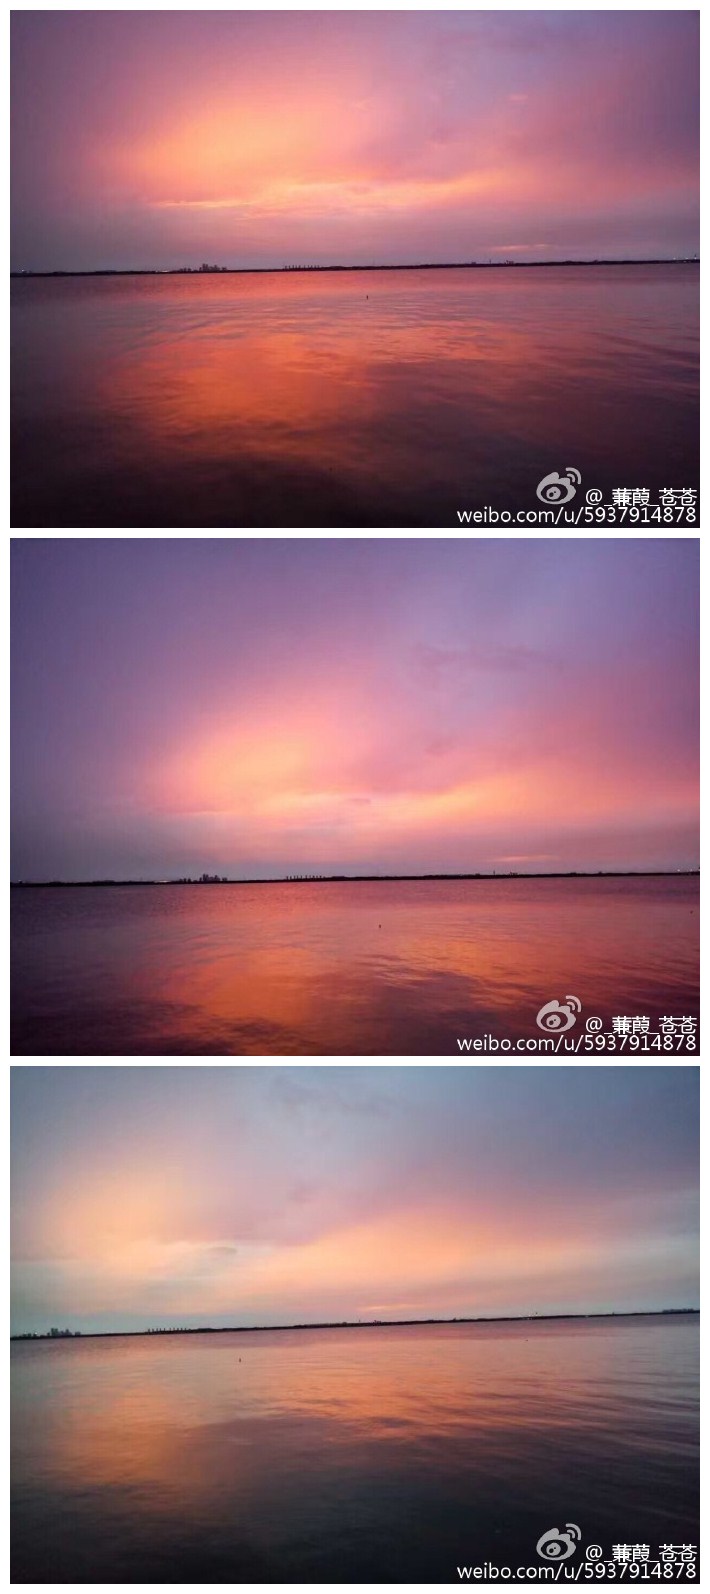 骑车去看夕阳时阳澄湖畔美景！